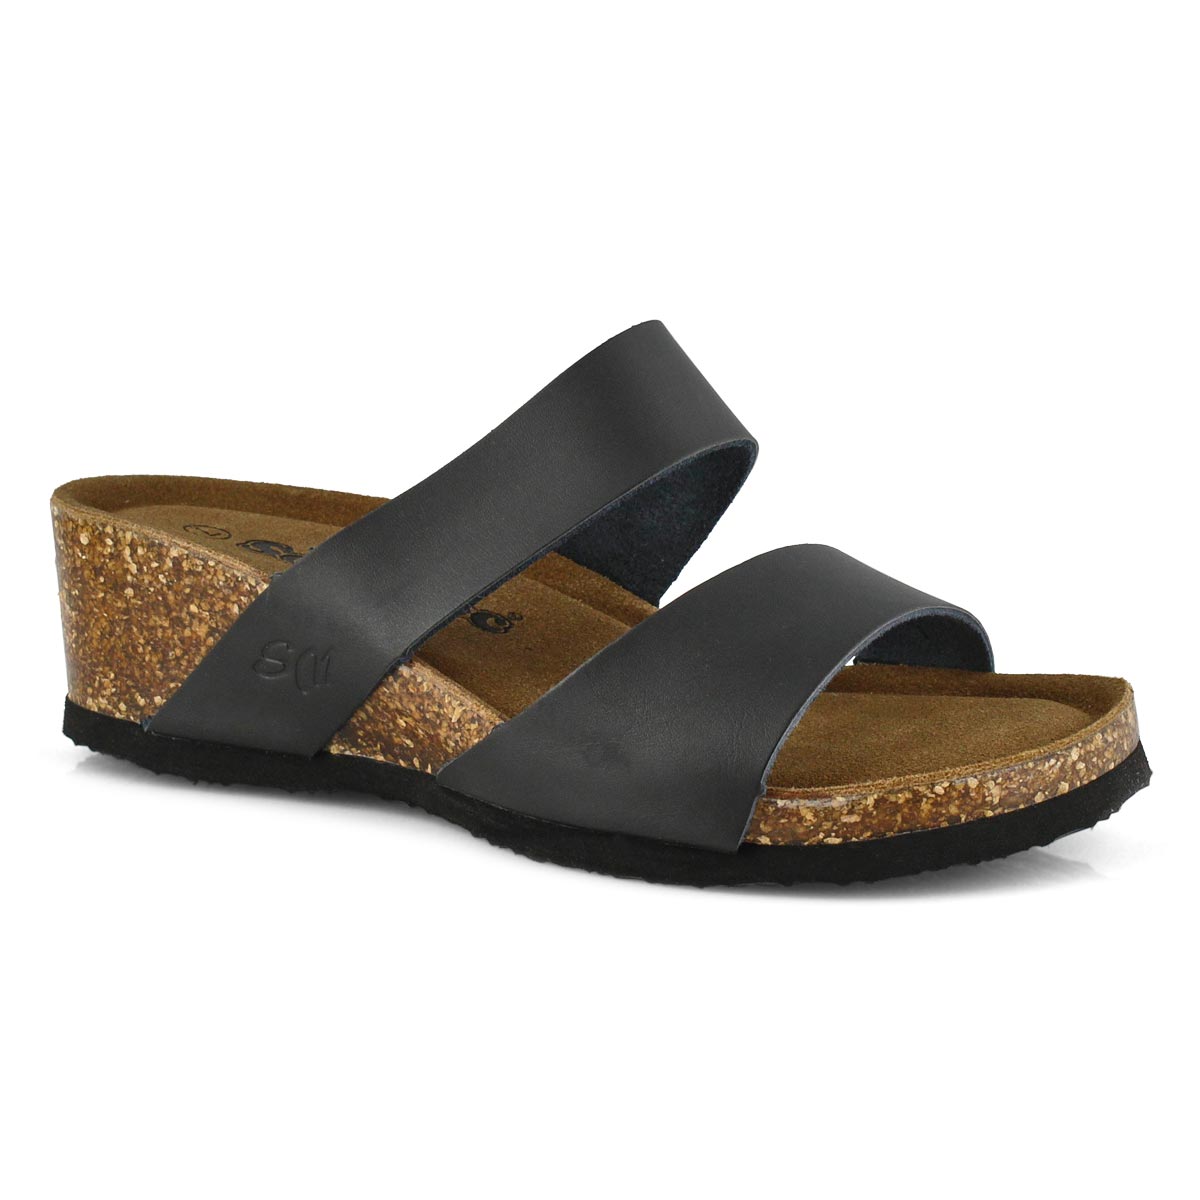 CASSIOPEIA black wedge sandal 